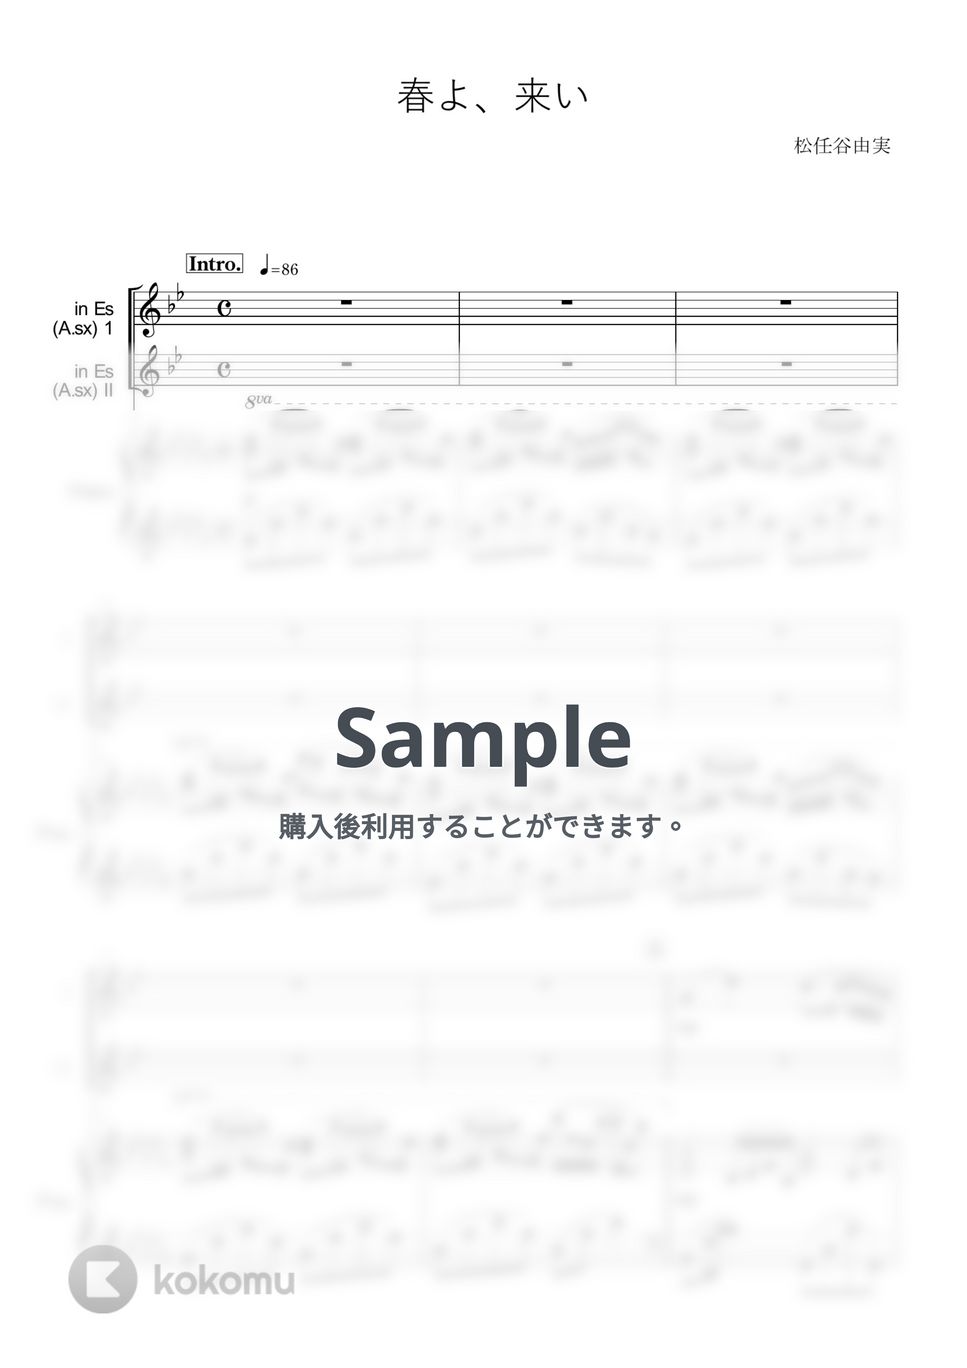 松任谷由実 - 春よ、来い (in E♭/アンサンブル/アルトサックス/ピアノ伴奏/春よ来い/松任谷由実) by enorisa